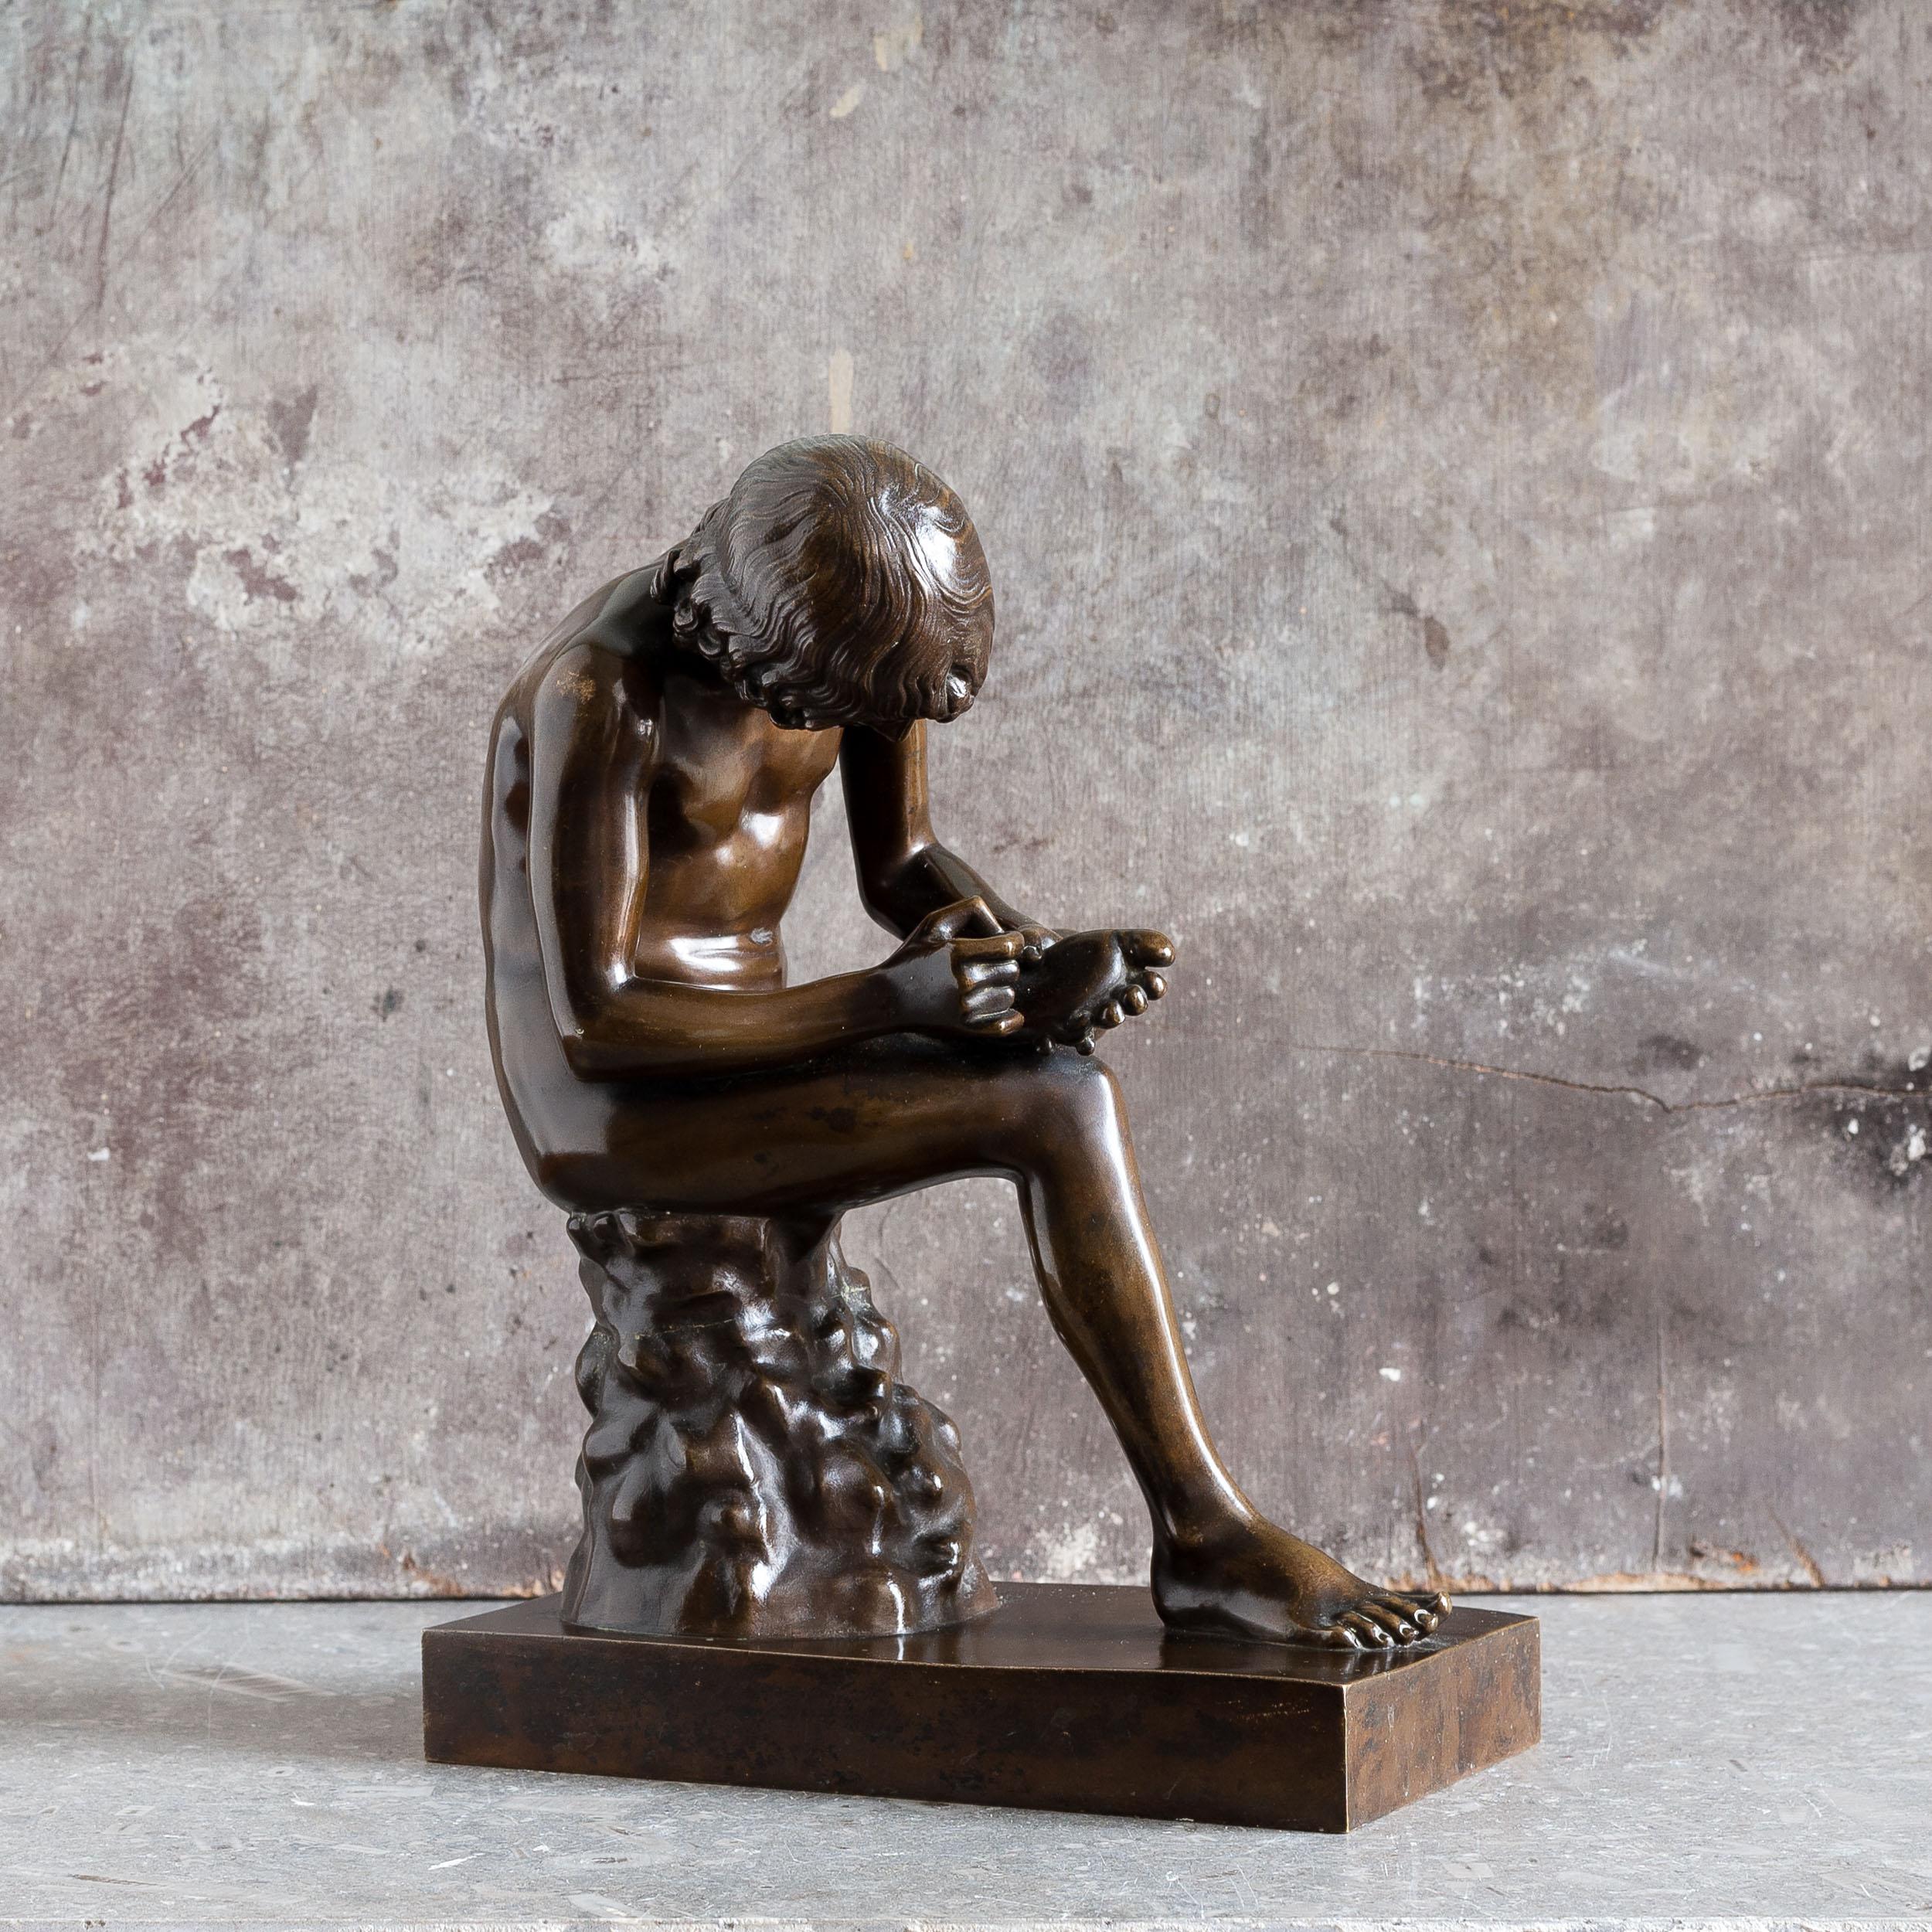 Französisches Bronzemodell des Spinario aus der Mitte des 19. Jahrhunderts, gegossen von der berühmten Gießerei Barbedienne, nach antikem Vorbild, mit Stempel auf dem Sockel.

Bei dieser Skulptur handelt es sich um eine französische Kopie des